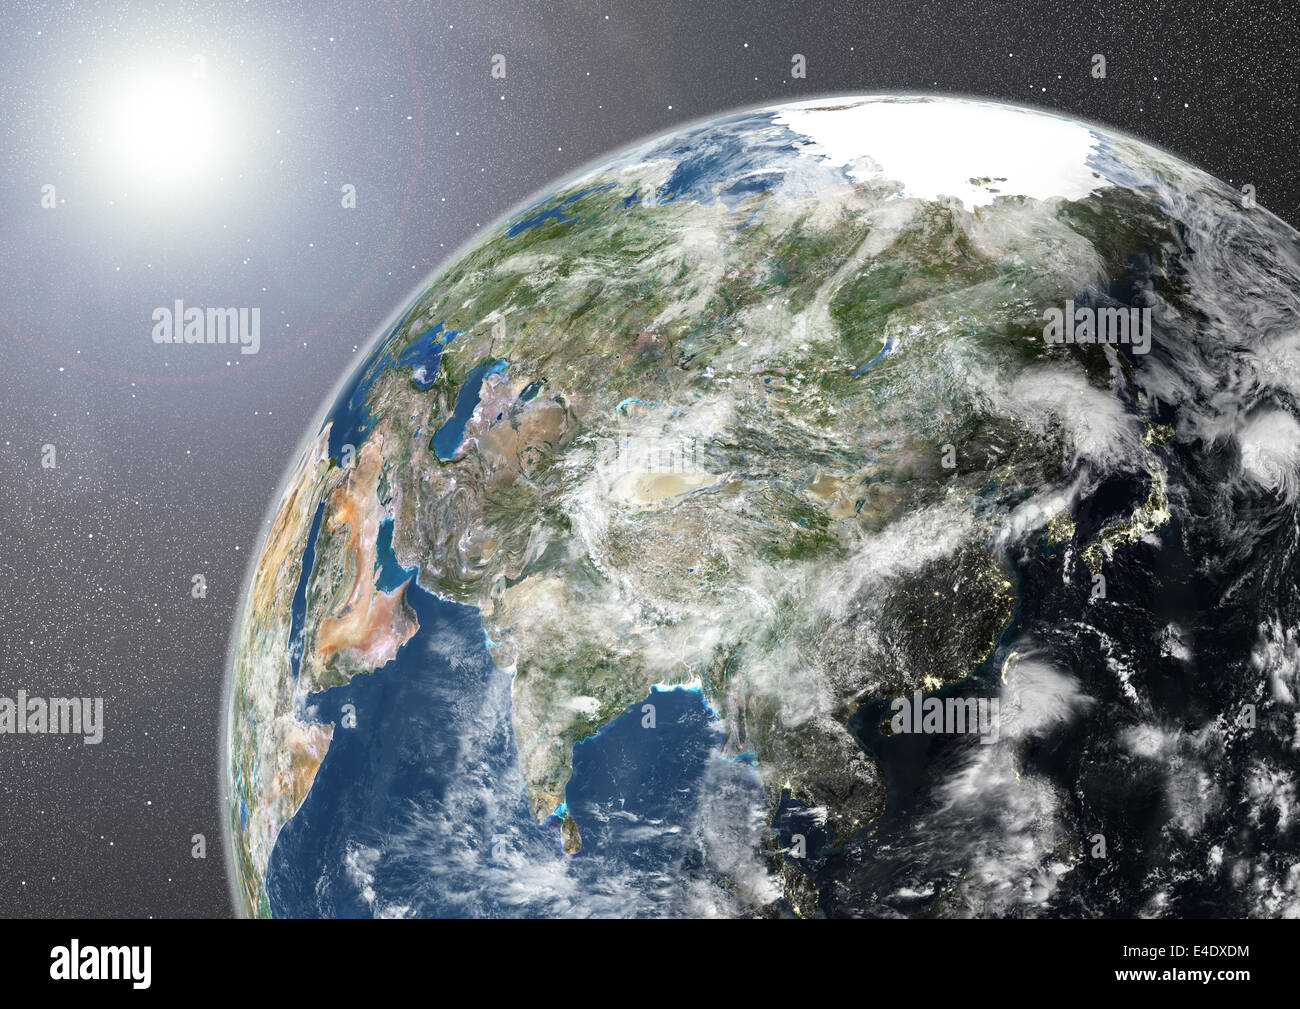 Kugel-Asien, Echtfarben-Satellitenbild zeigt. Echtfarben-Satellitenbild der Erde zeigt Asien, halb im Schatten, mit clo Stockfoto